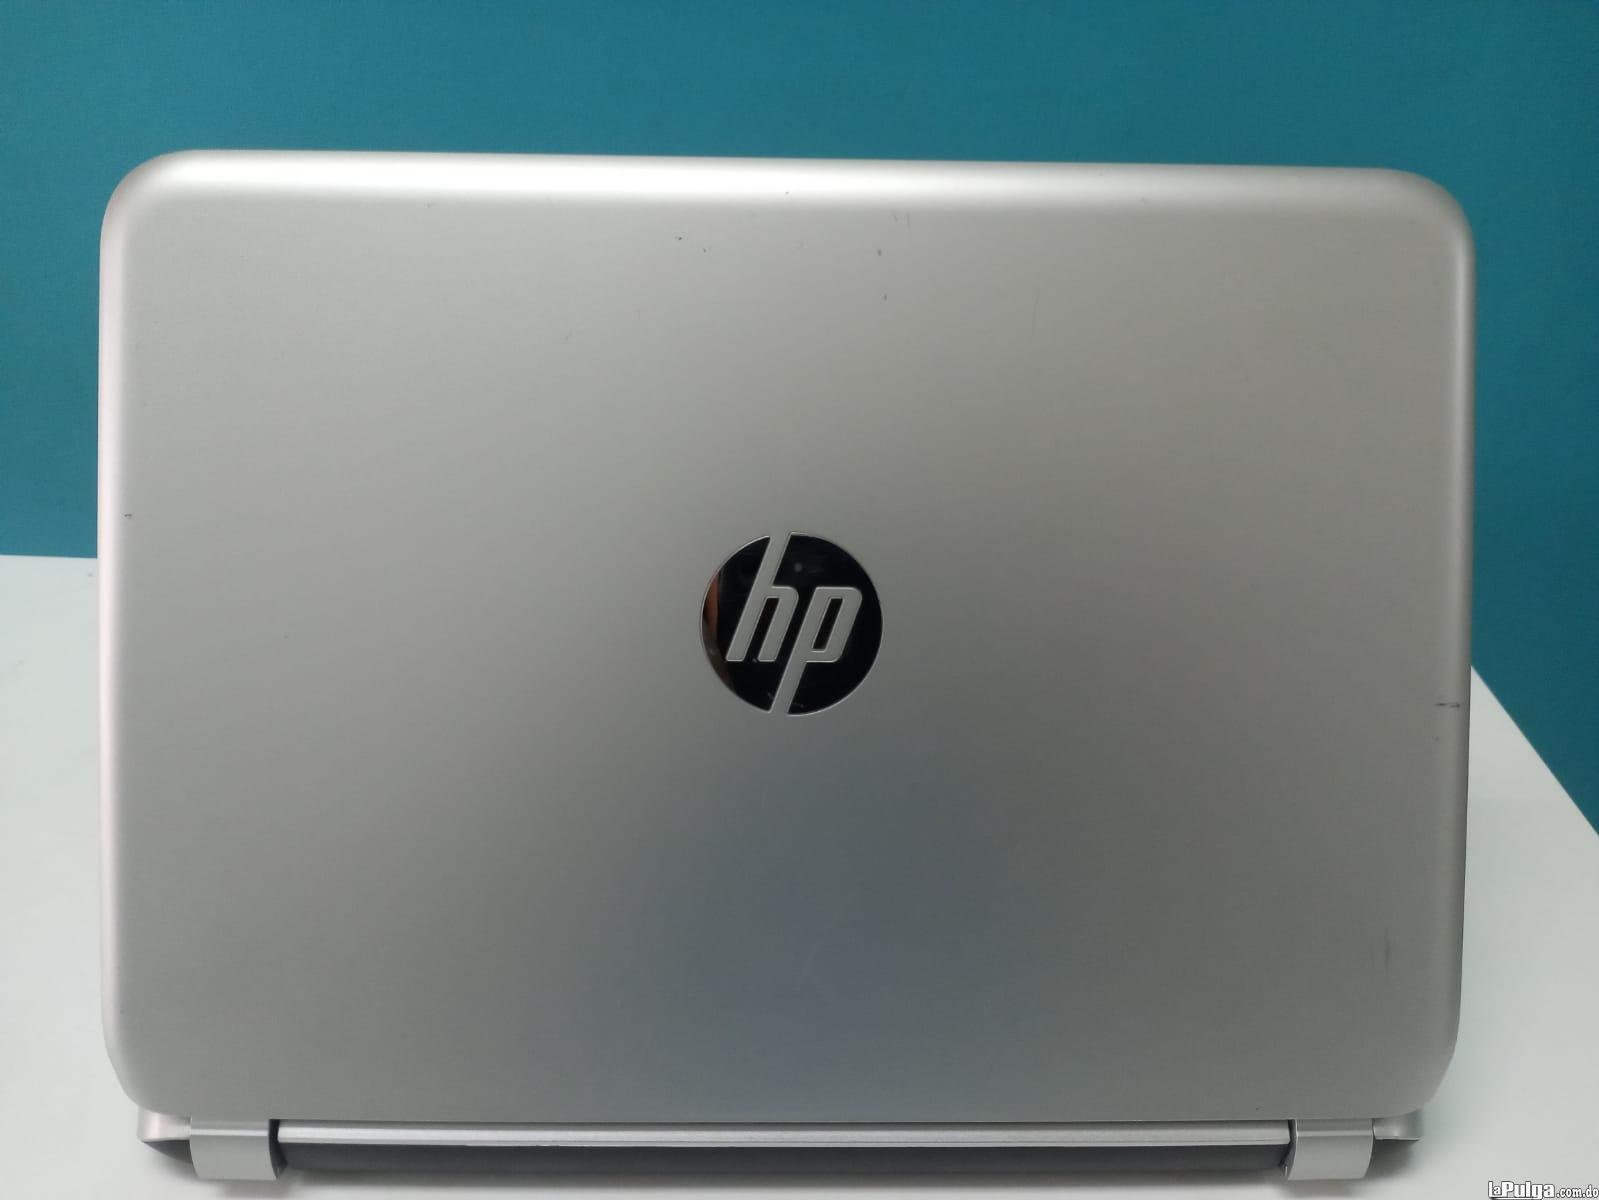 Laptop HP 210 G1 / 4th Gen Intel Core i3 / 4GB DDR3 / 120GB SSD Foto 7162016-2.jpg